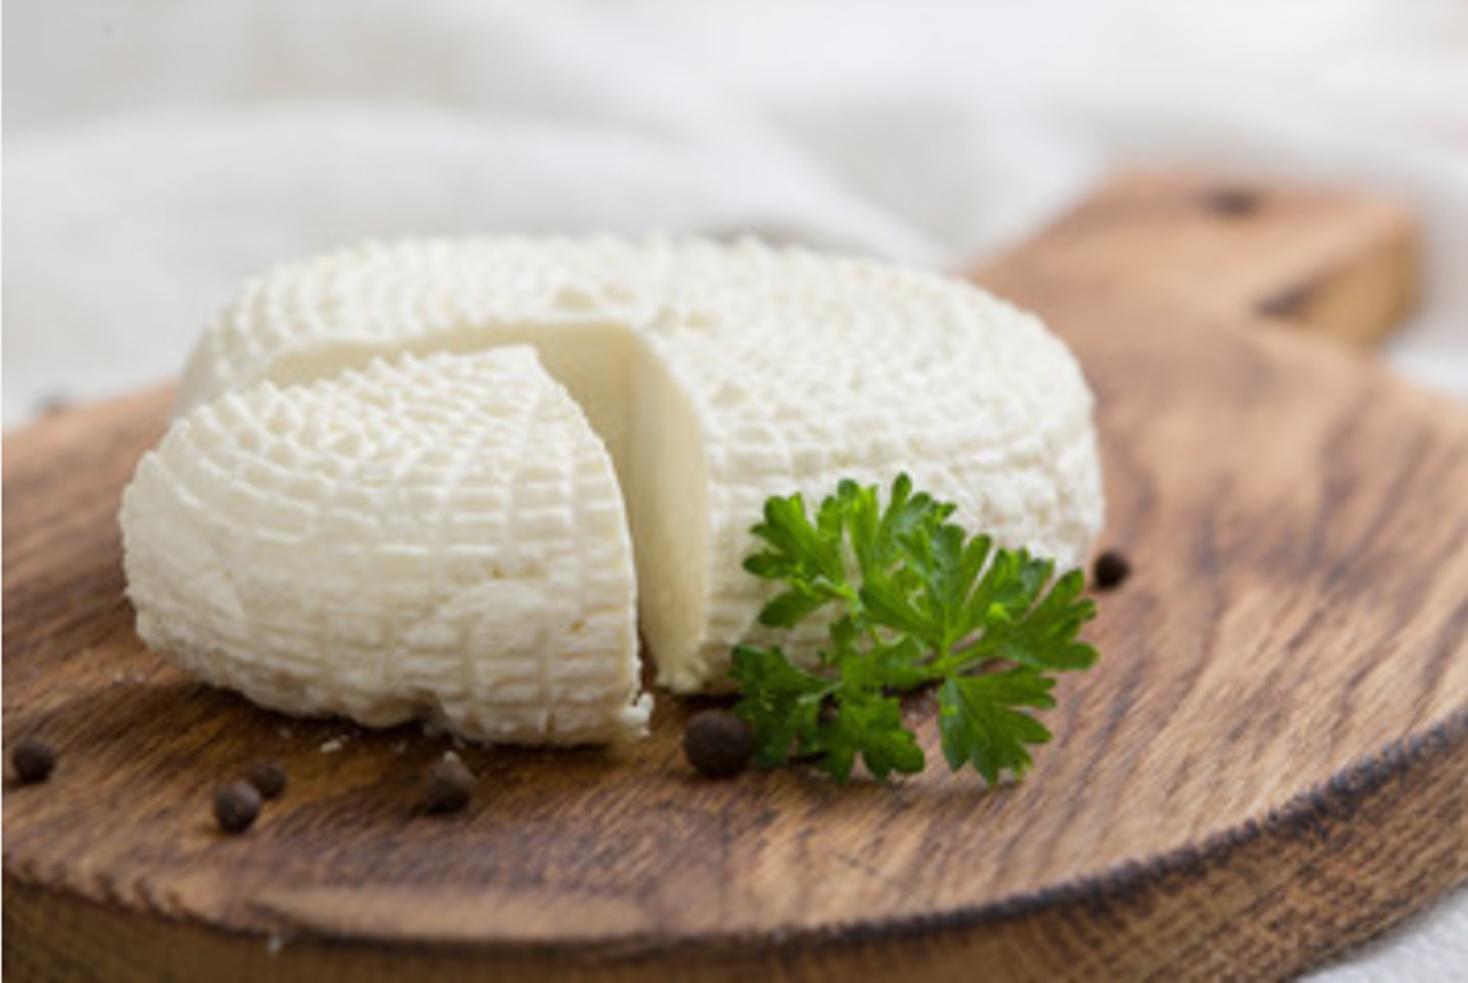 Învățați să preparați brânză din lapte de vaci acasă. E foarte simplu și sănătos!